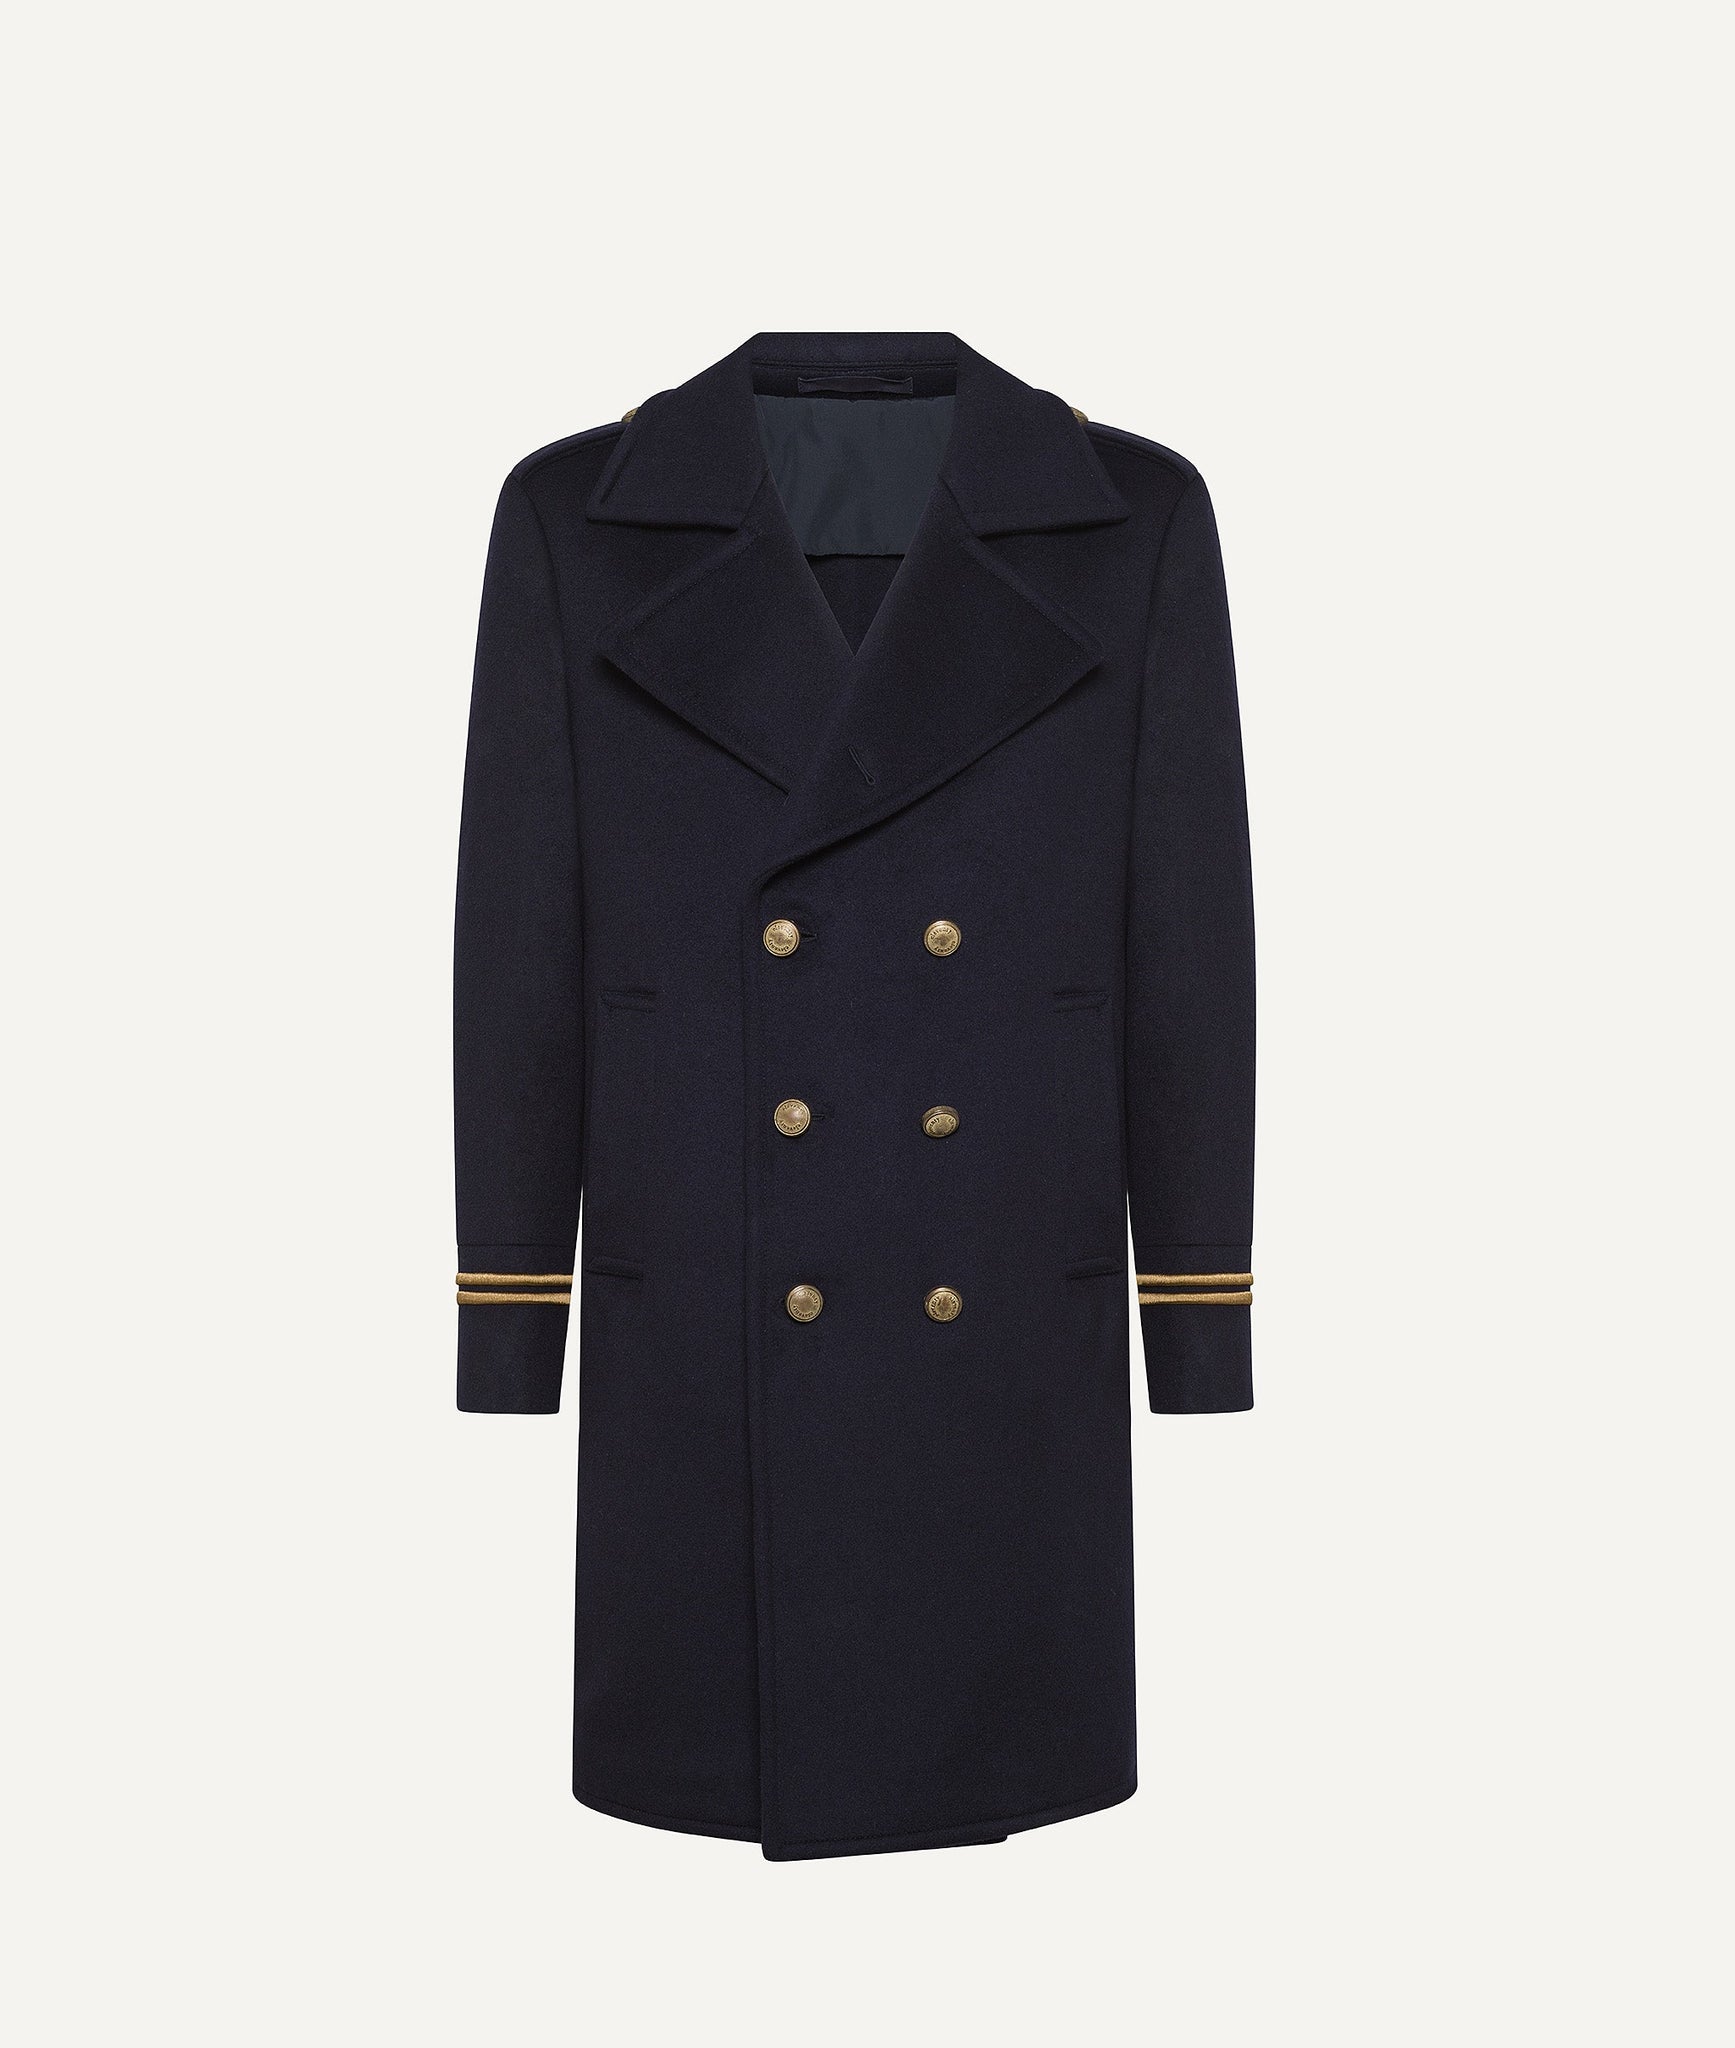 Eleventy - Sailor Coat in Wool